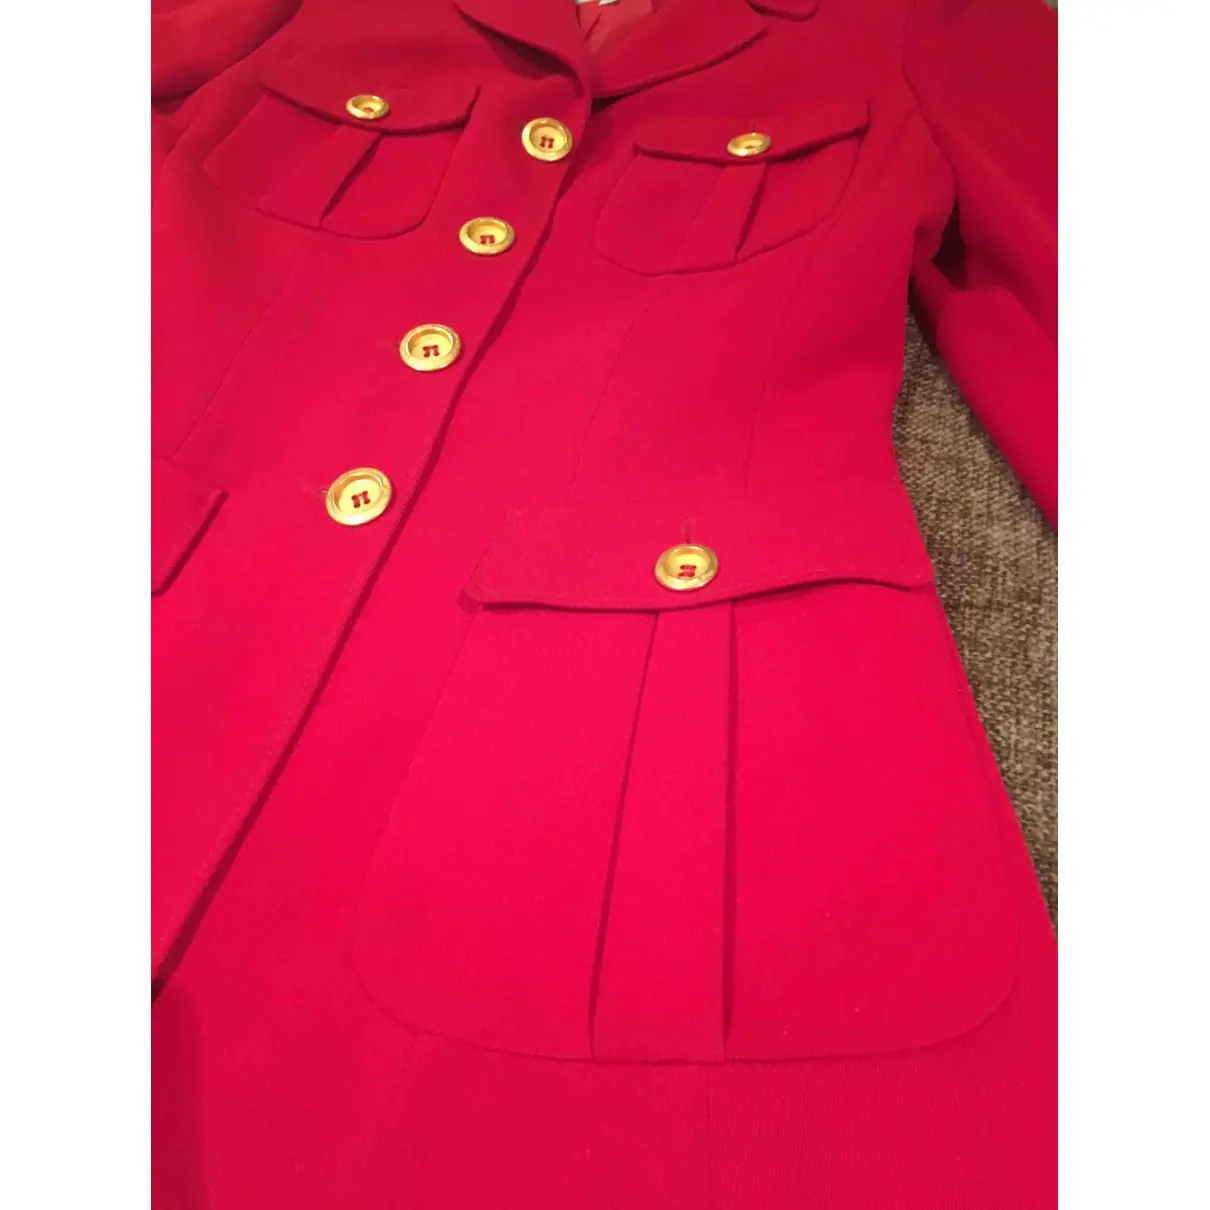 Red Polyester Jacket VERTIGO